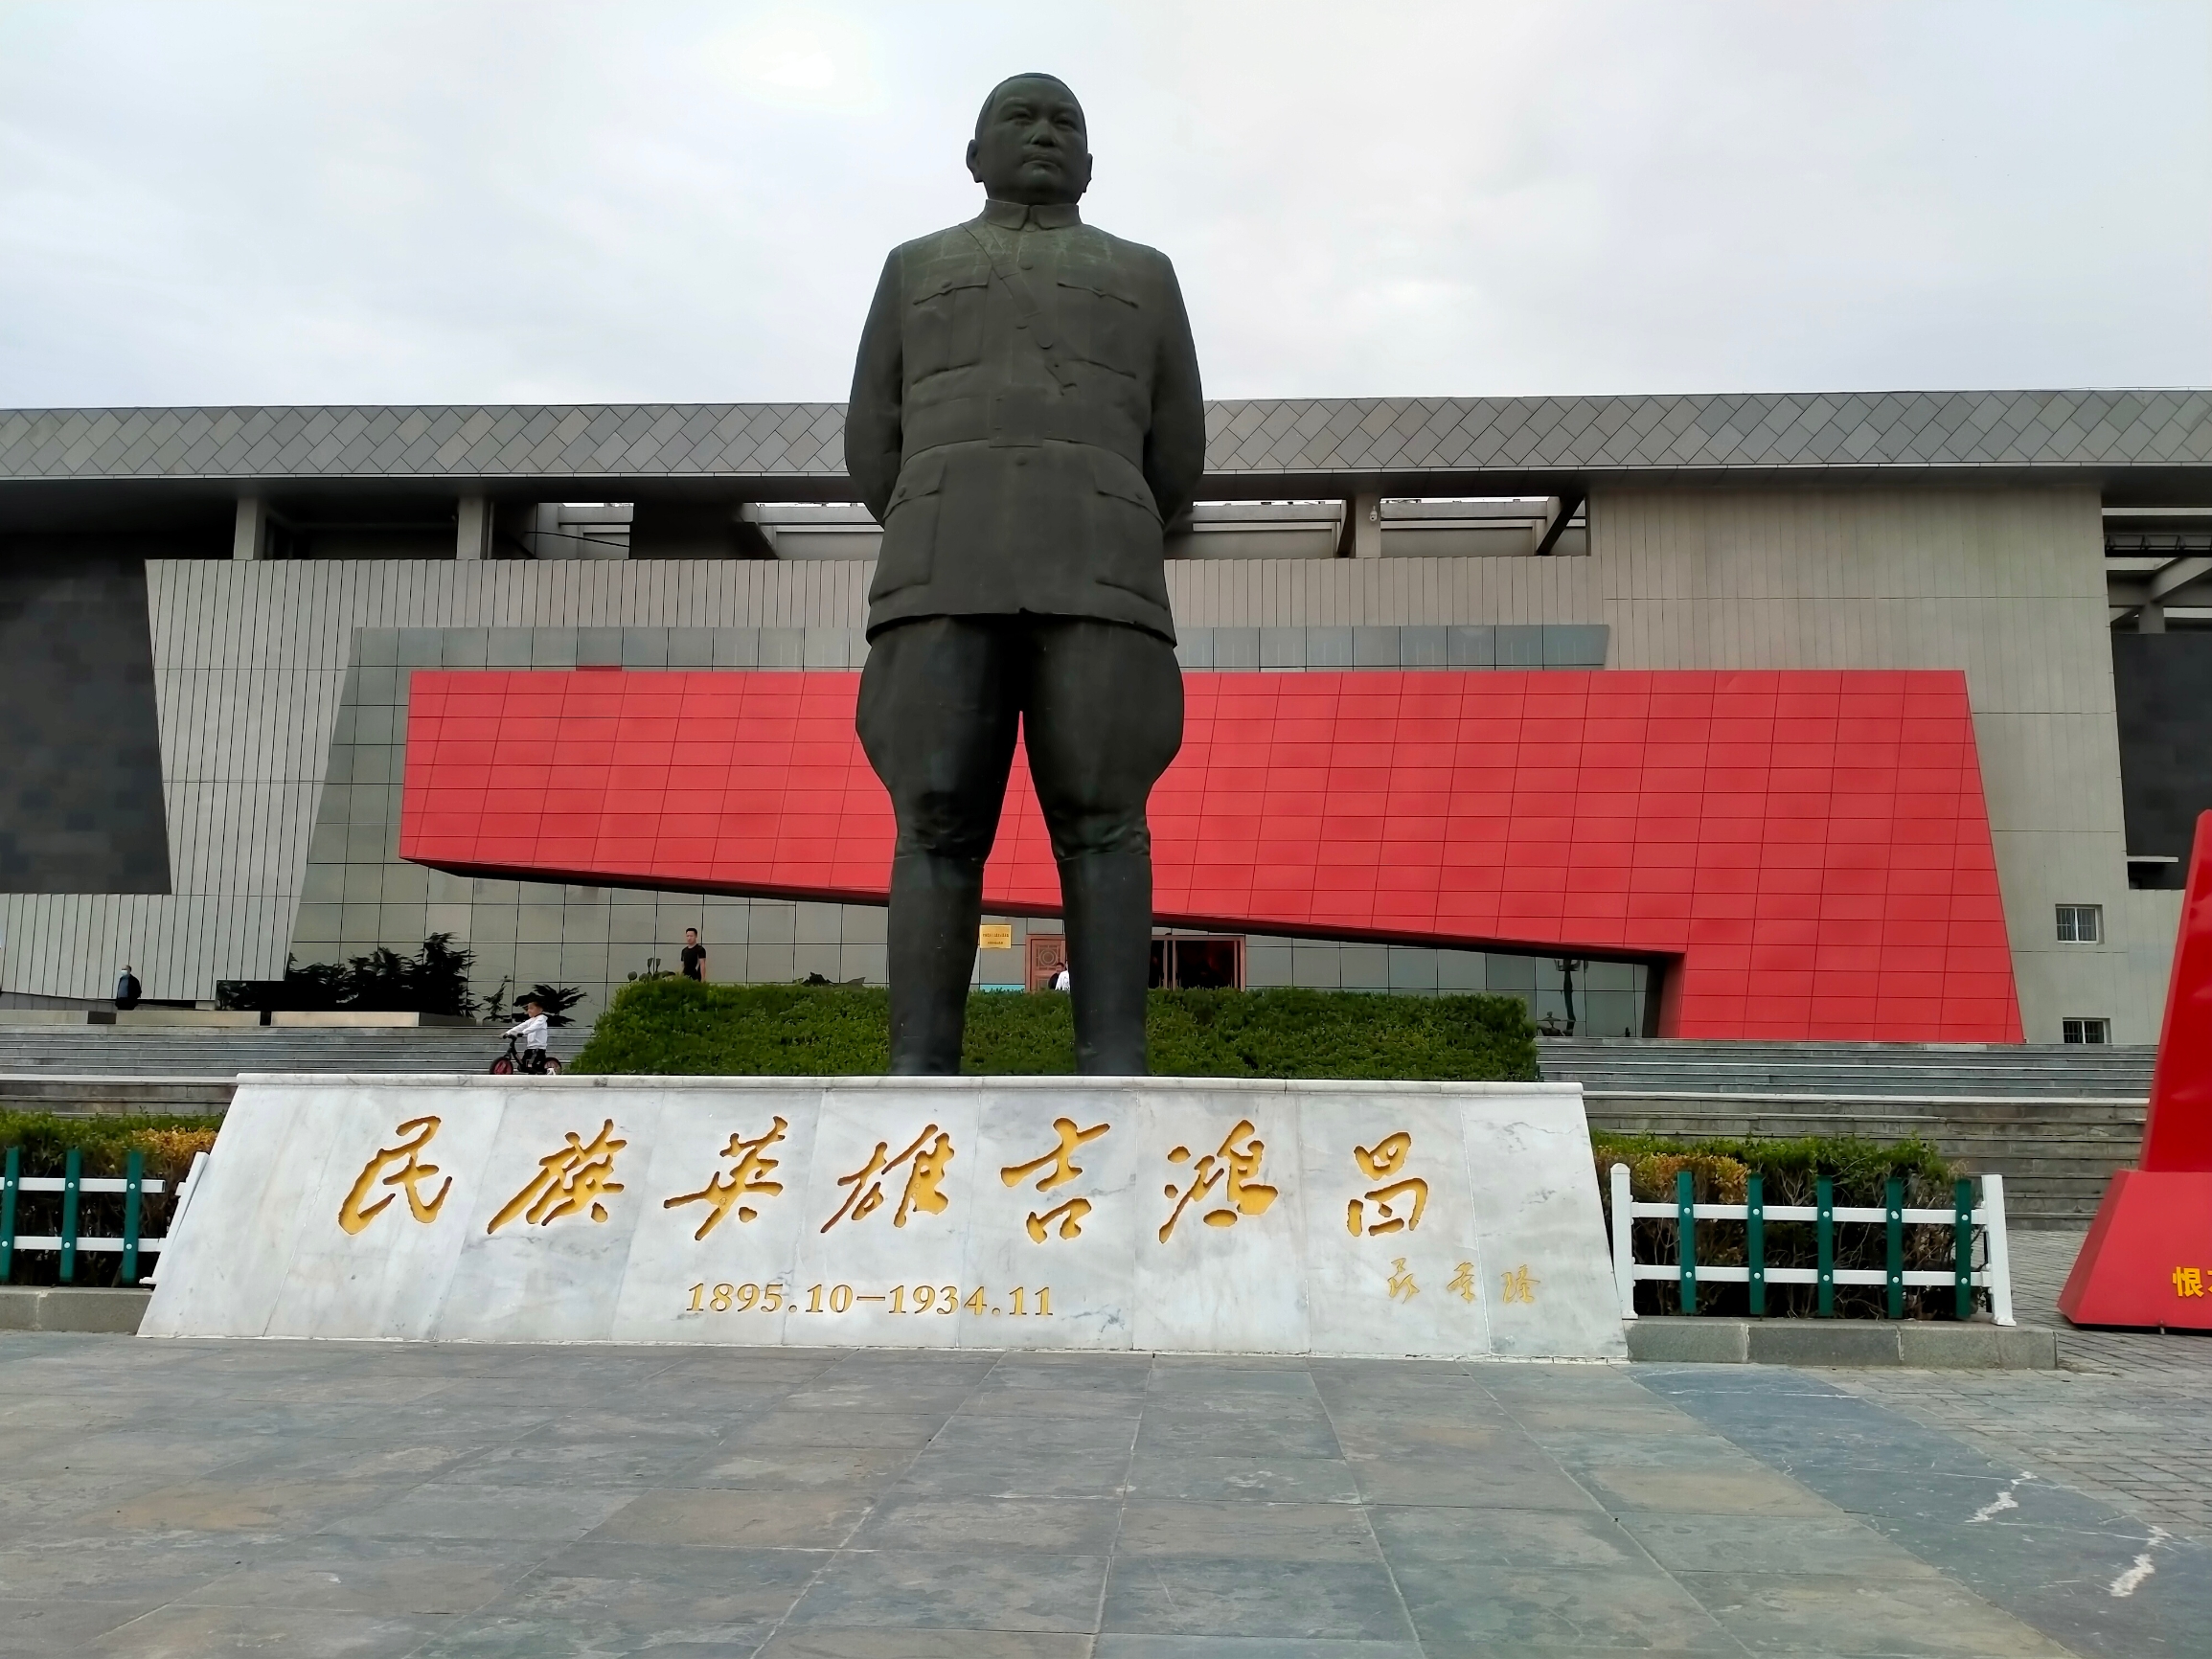 吉鸿昌纪念馆位于河南省扶沟县城南，纪念馆由纪念馆，铜像广场，国防教育园，廉政文化园等组成。其中铜像广